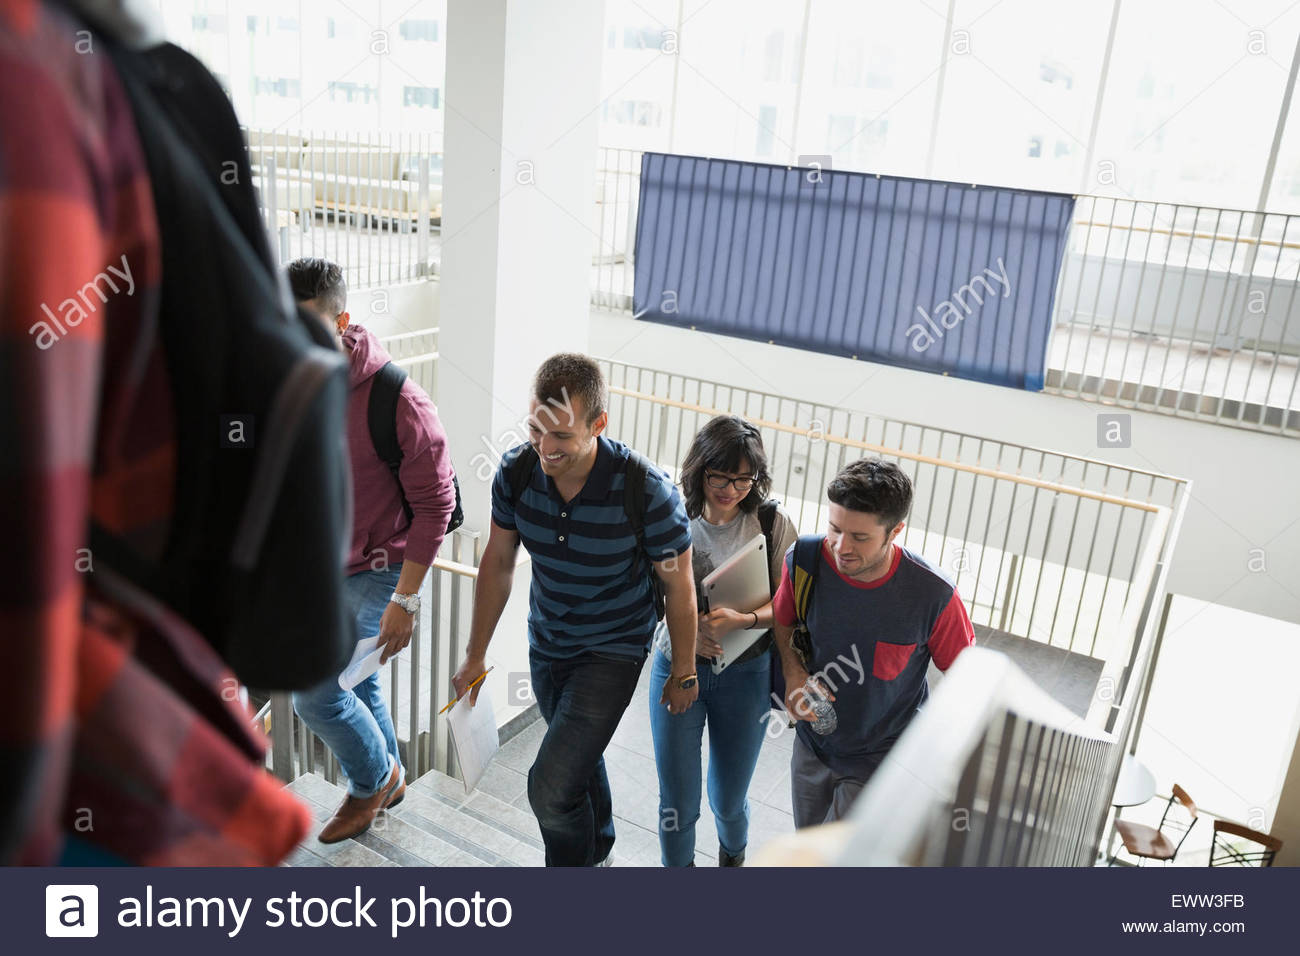 Los estudiantes universitarios subiendo escaleras Foto de stock